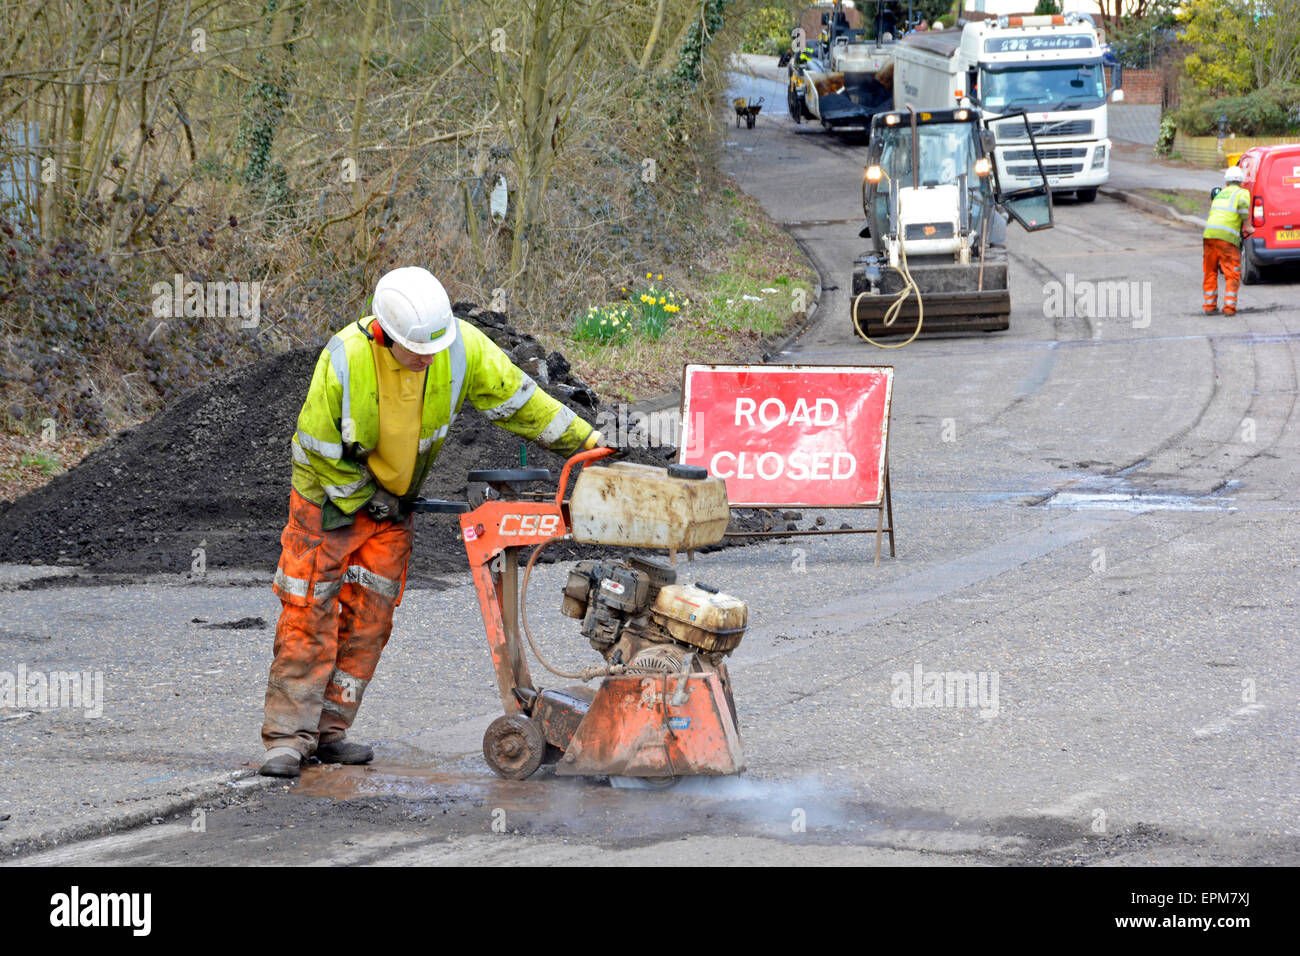 Village Road signe fermé et travailleur portant une machine de coupe de disque d'entraînement à haute visibilité faisant des travaux routiers réparation de nid-de-poule avant de resurfaçer Essex Angleterre Royaume-Uni Banque D'Images